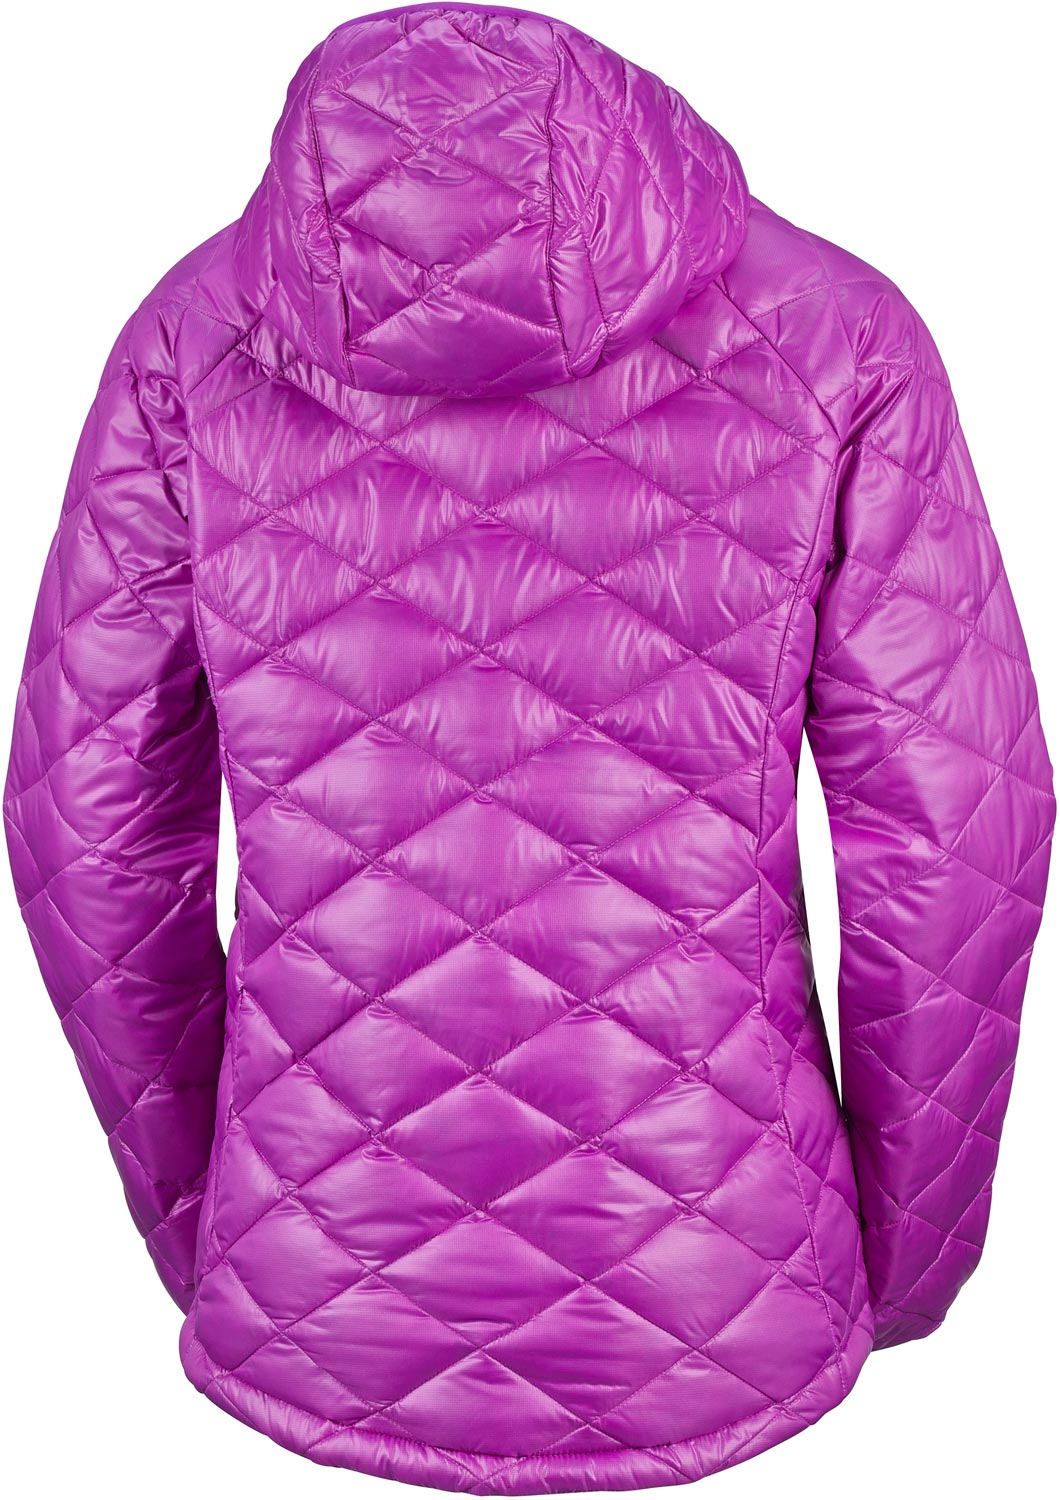 TRASK MOUNTAIN 650 TURBODOWN - Women's Winter Jacket